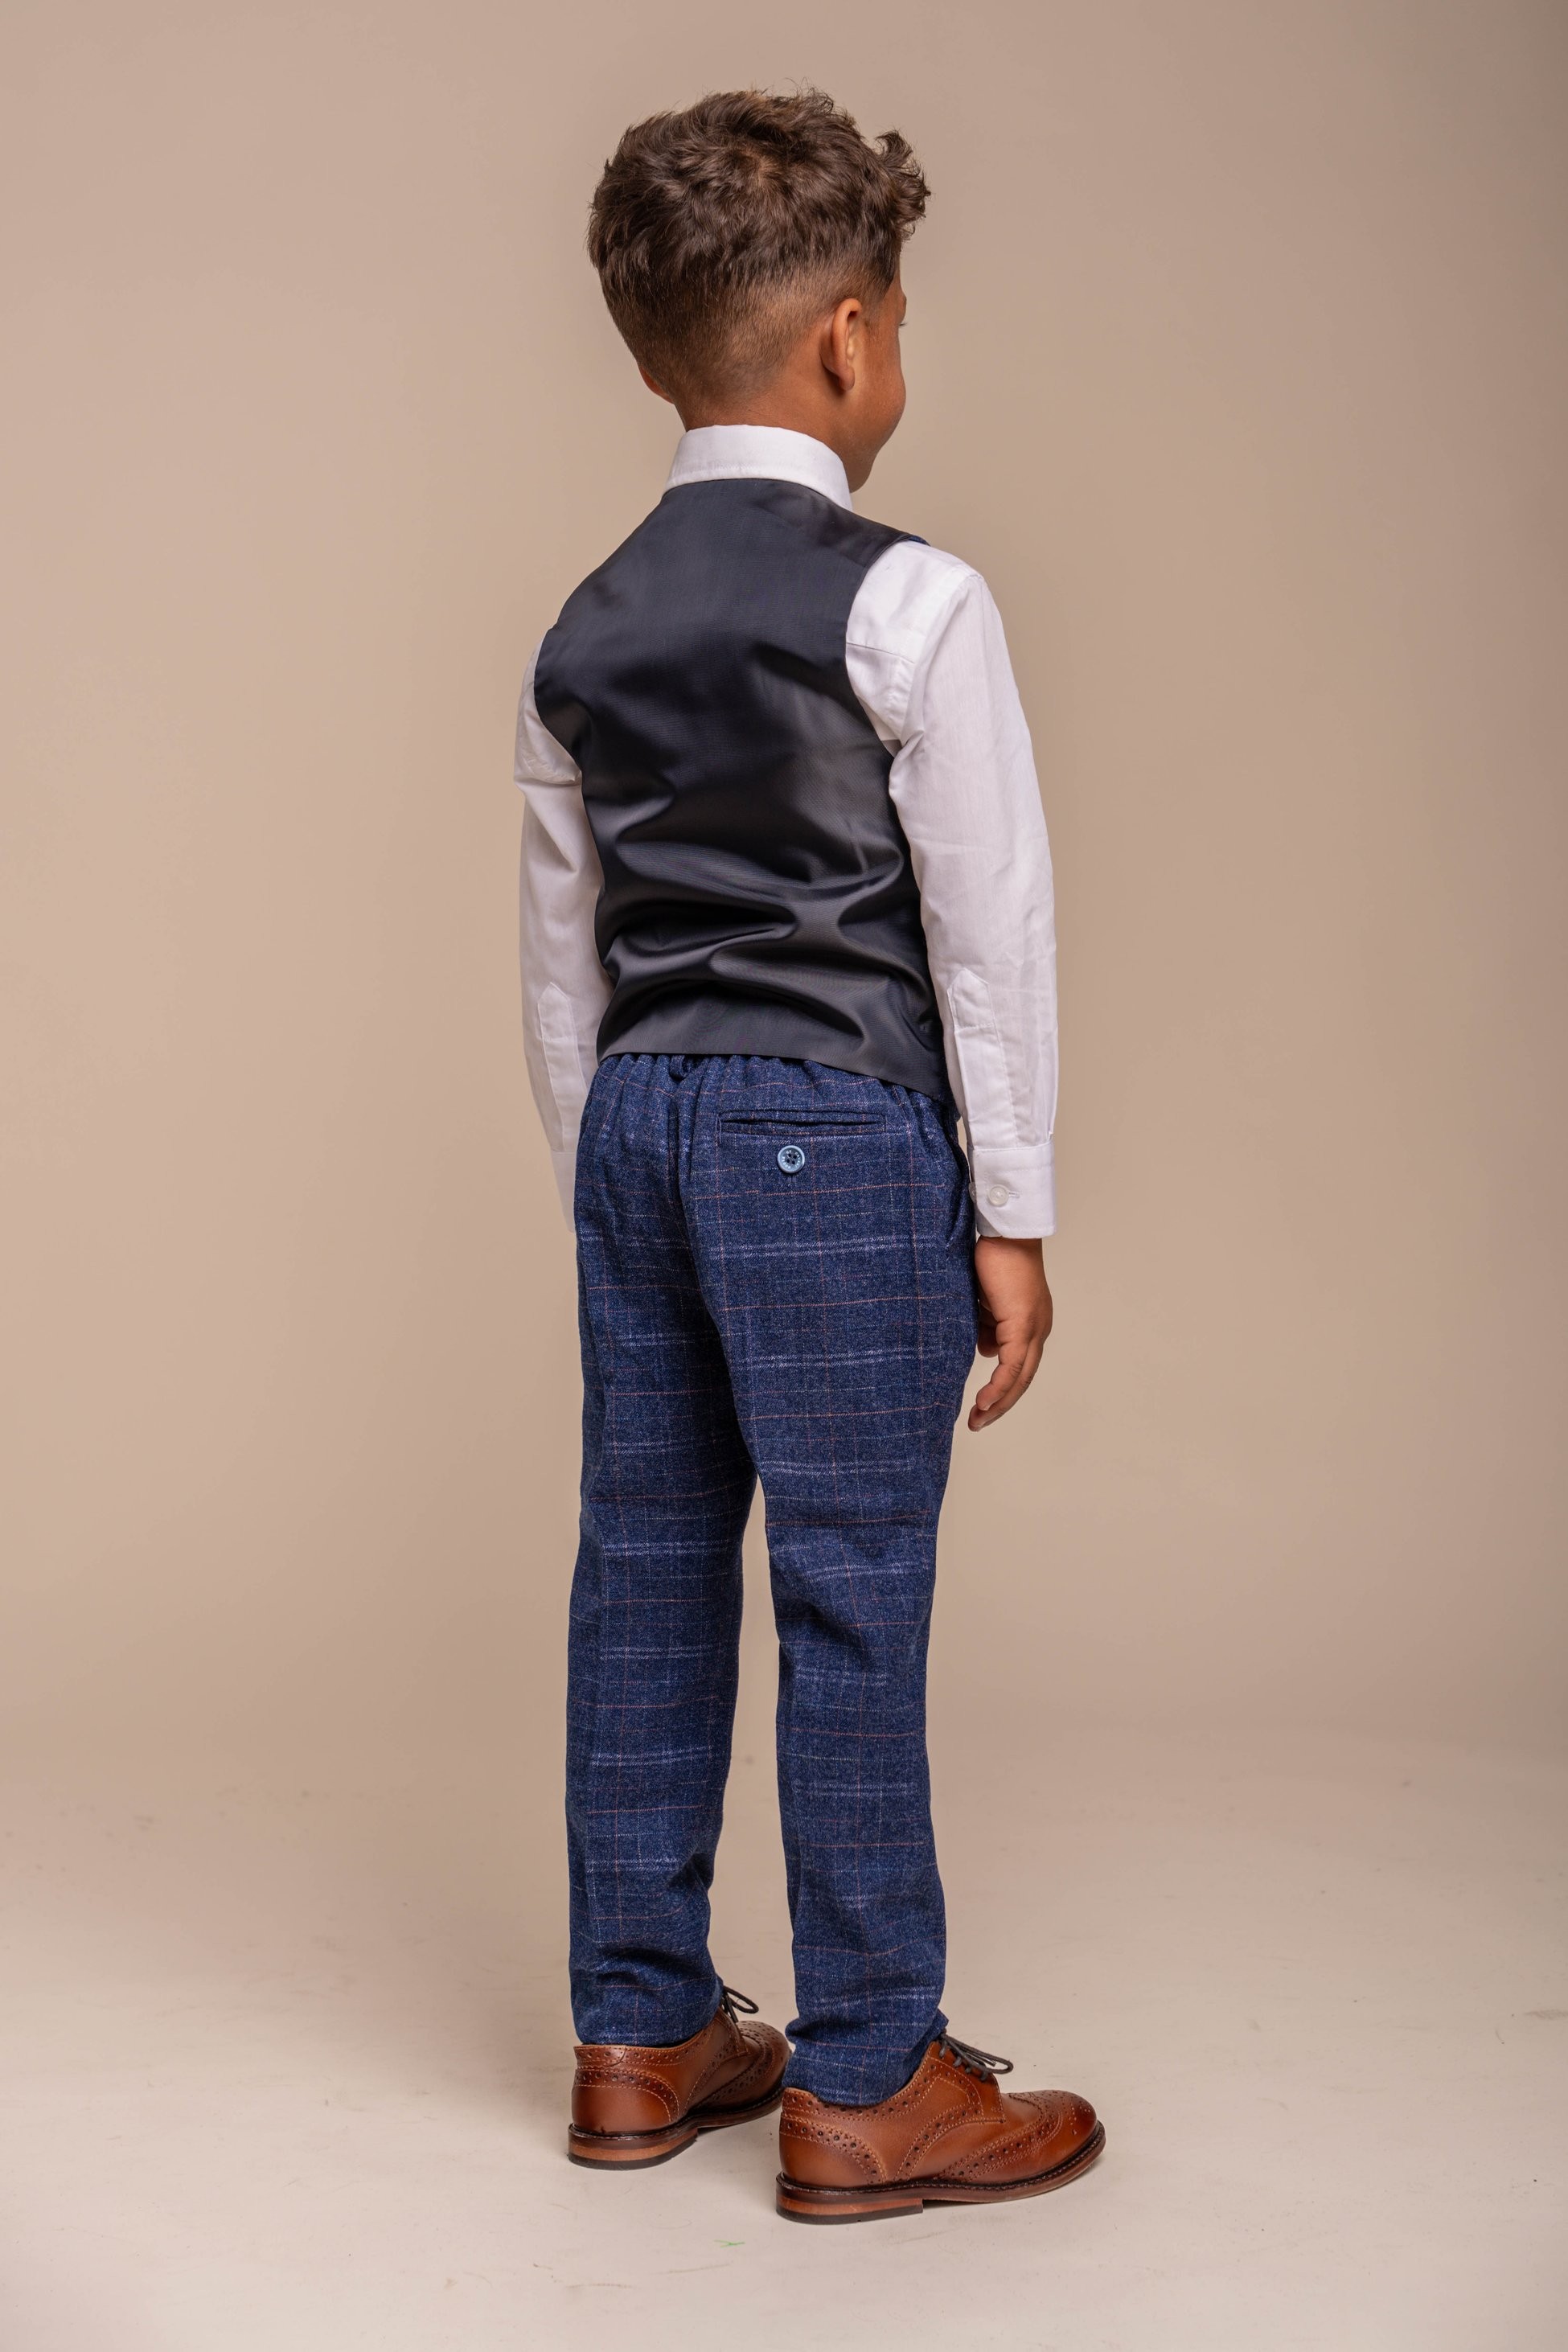 Jungen Tweed Karo Navy Slim Fit Anzug - KAISER